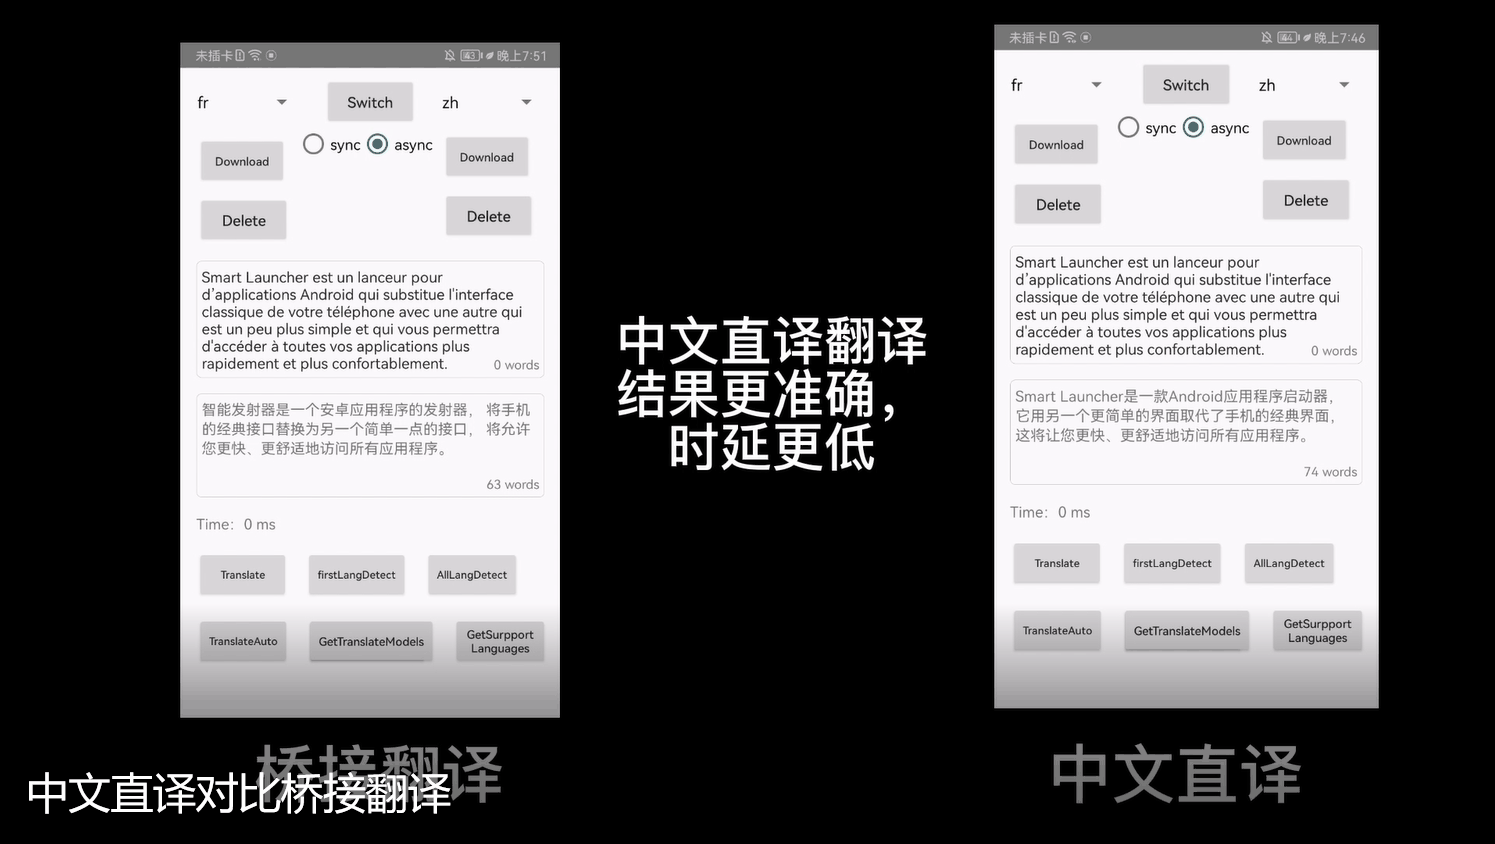 机器学习服务文本翻译能力升级，中文直译模型让译文表达更地道！